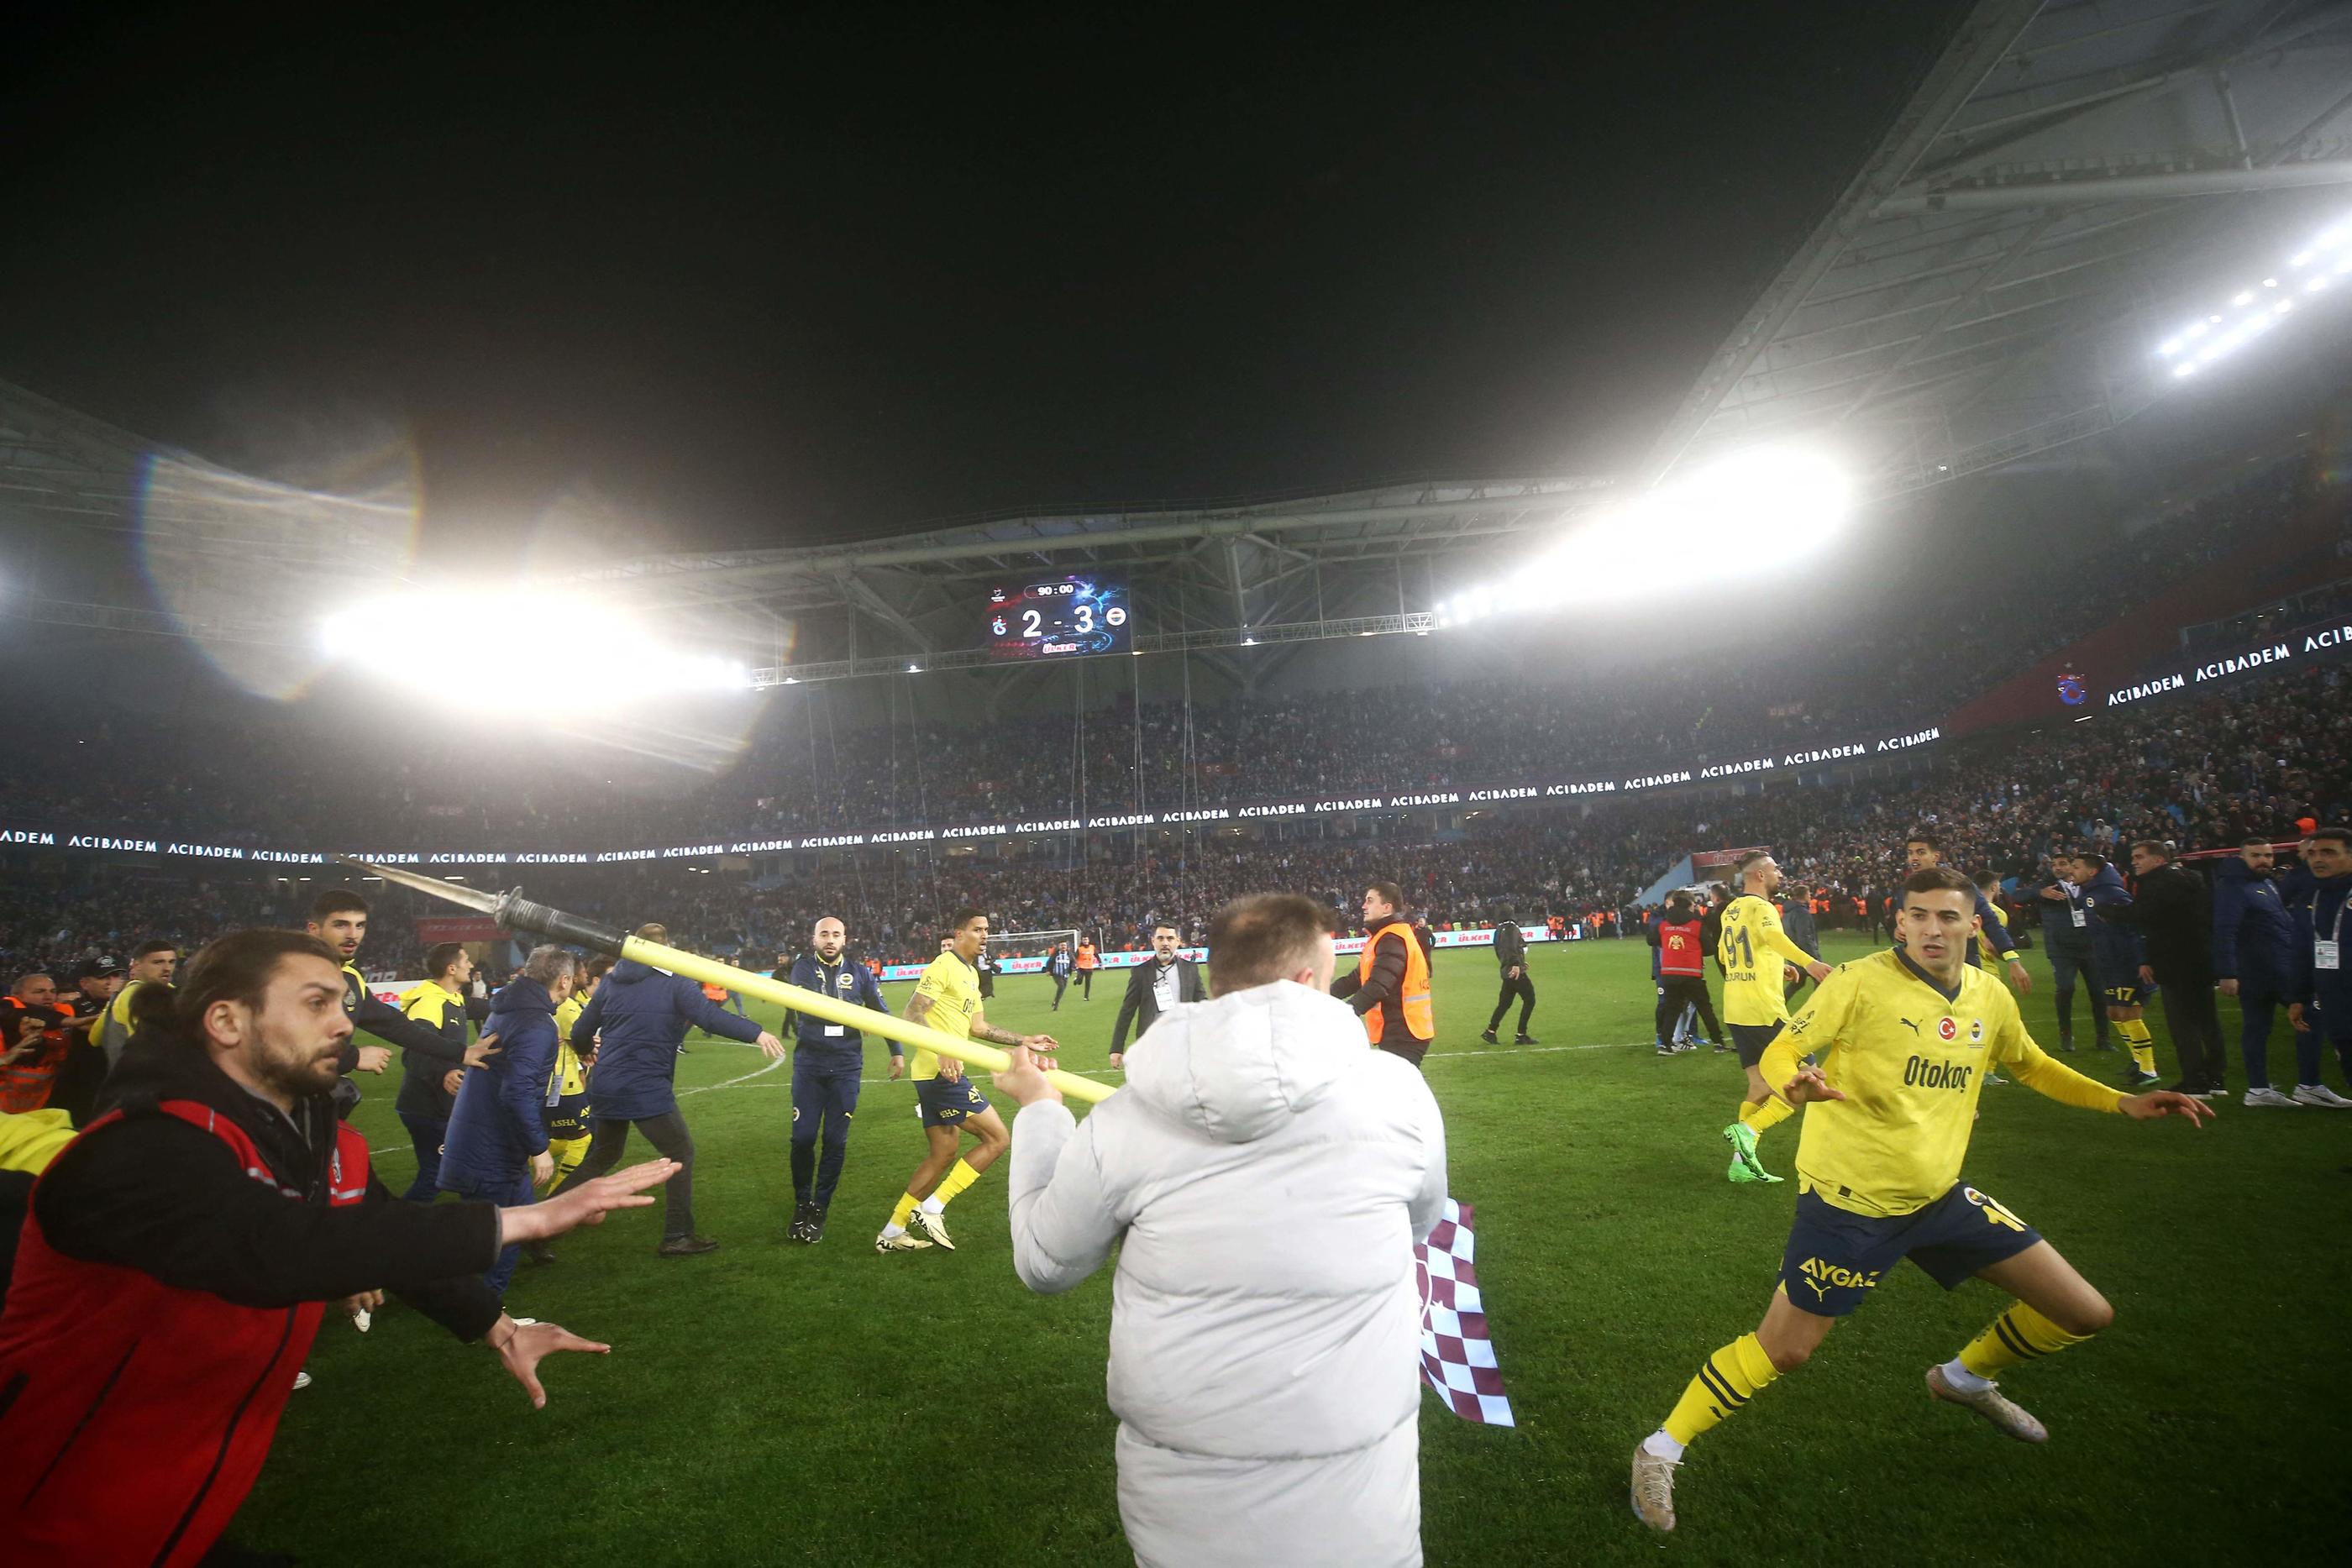 À l'issue de la rencontre, les célébrations des joueurs de Fenerbahçe ont causé l'envahissement du terrain par les supporters de Trabzonspor, qui ont voulu en découdre. AFP/Demiroren News Agency